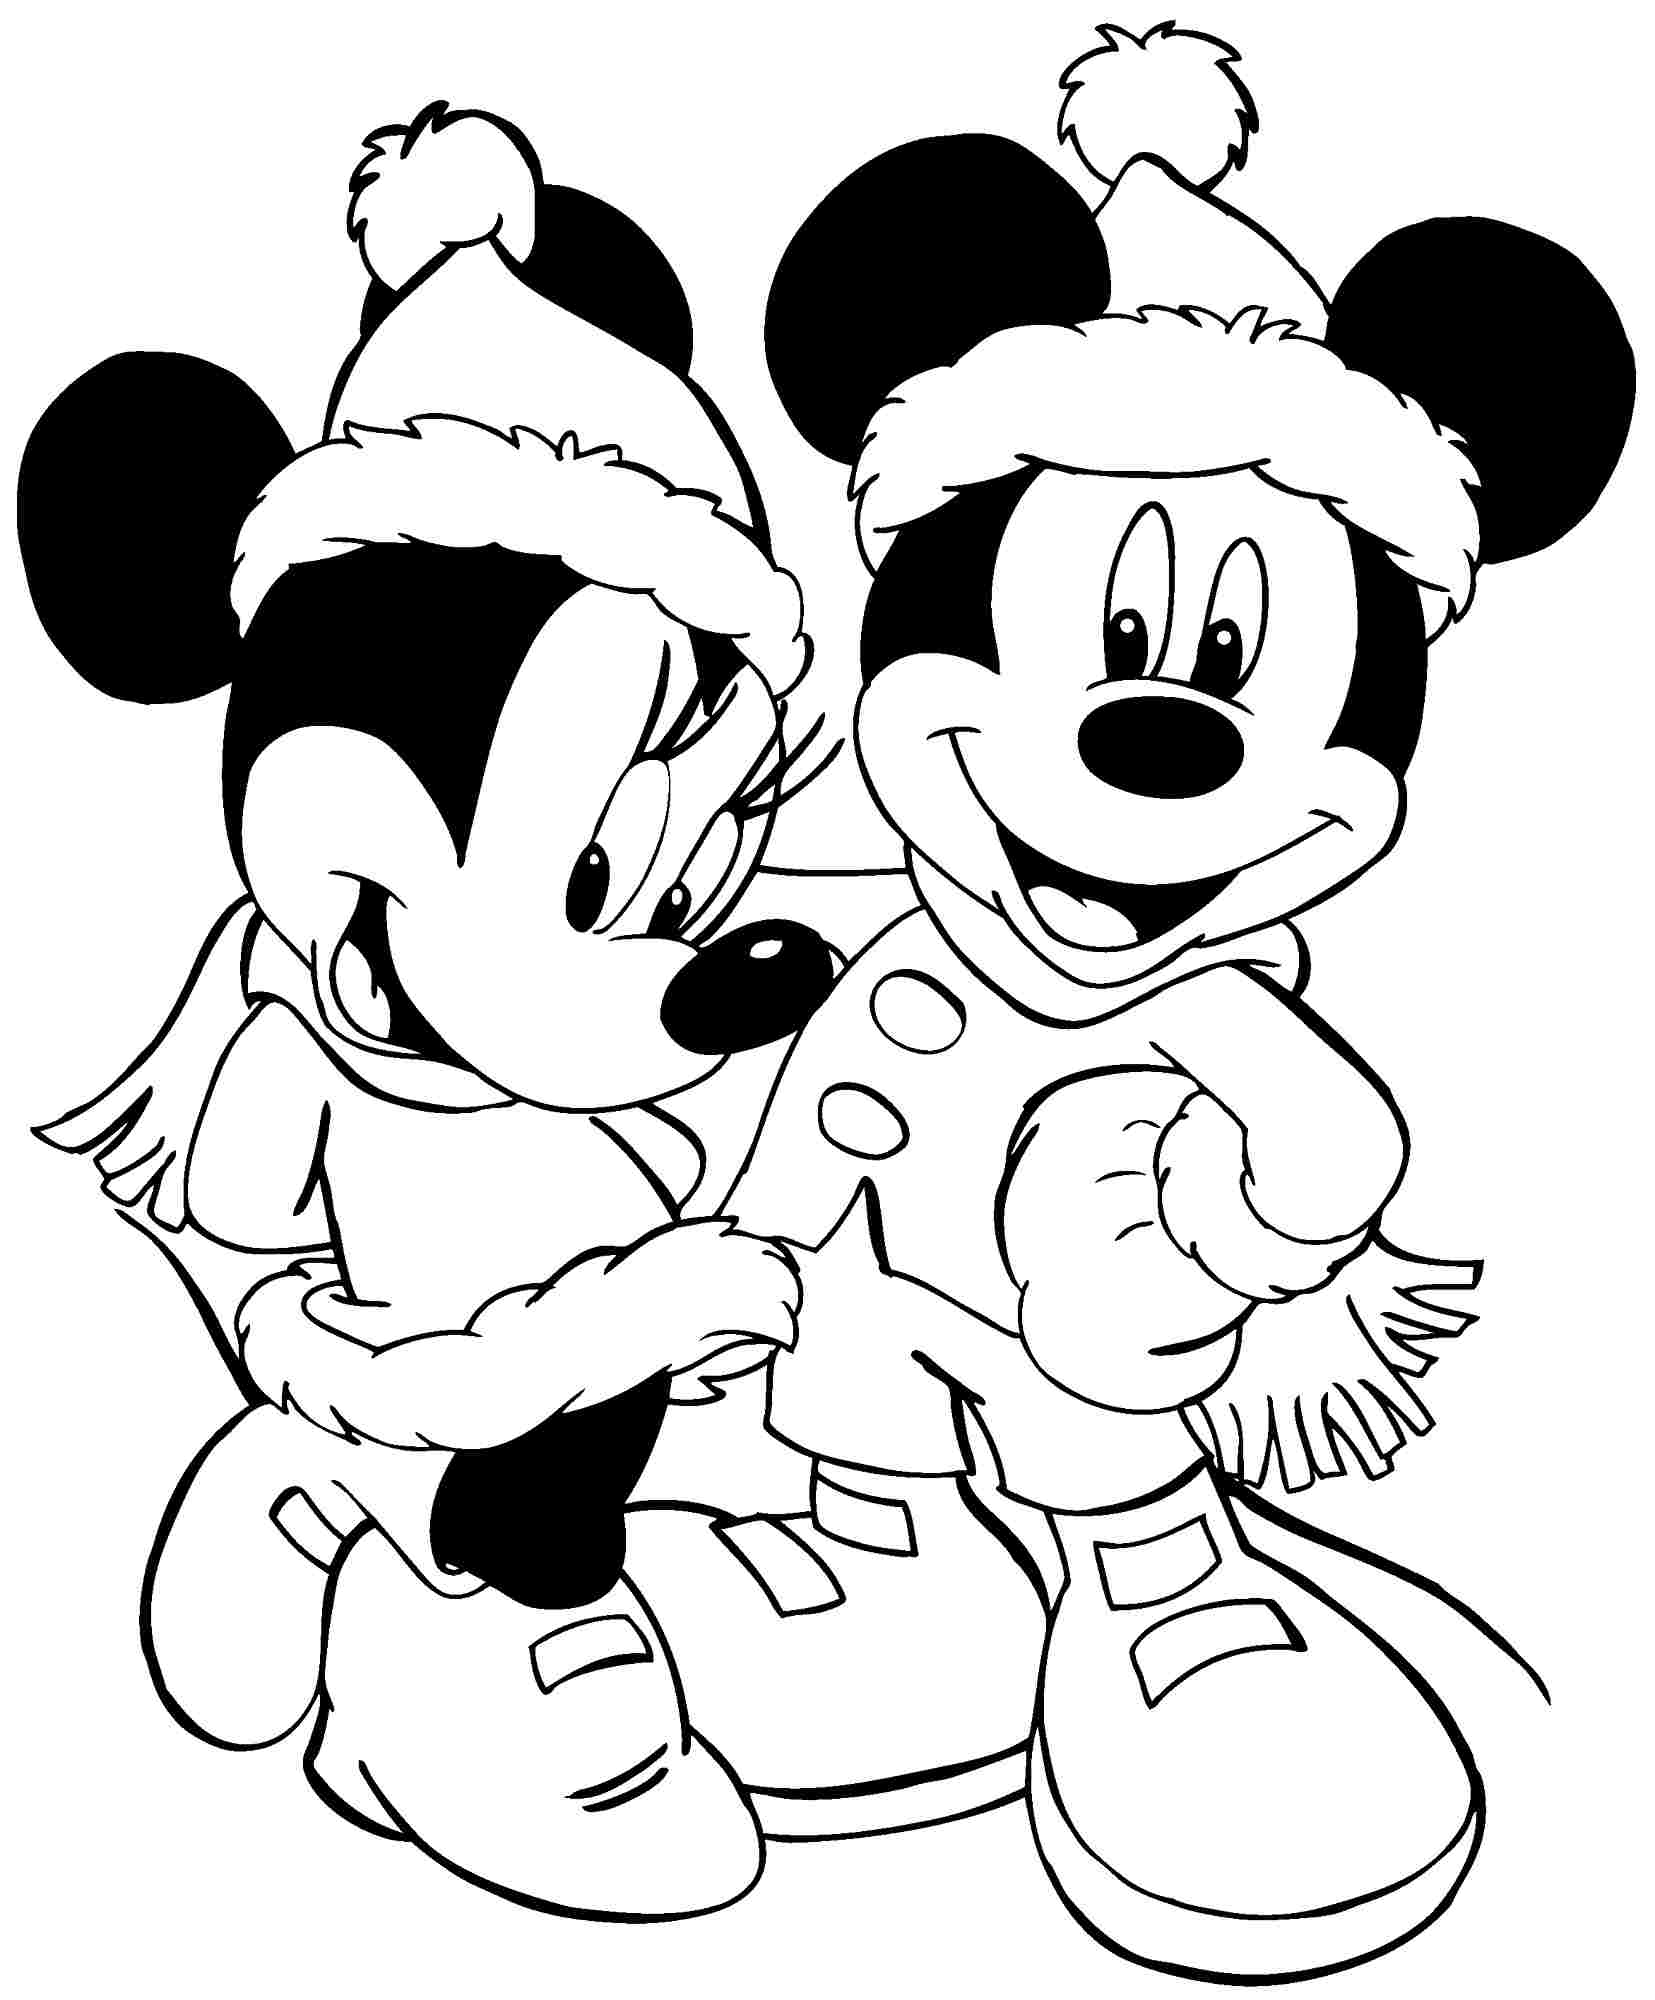 Tuyển tập những bức tranh tô màu chuột Mickey dễ thương nhất   c3nguyentatthanhhpeduvn